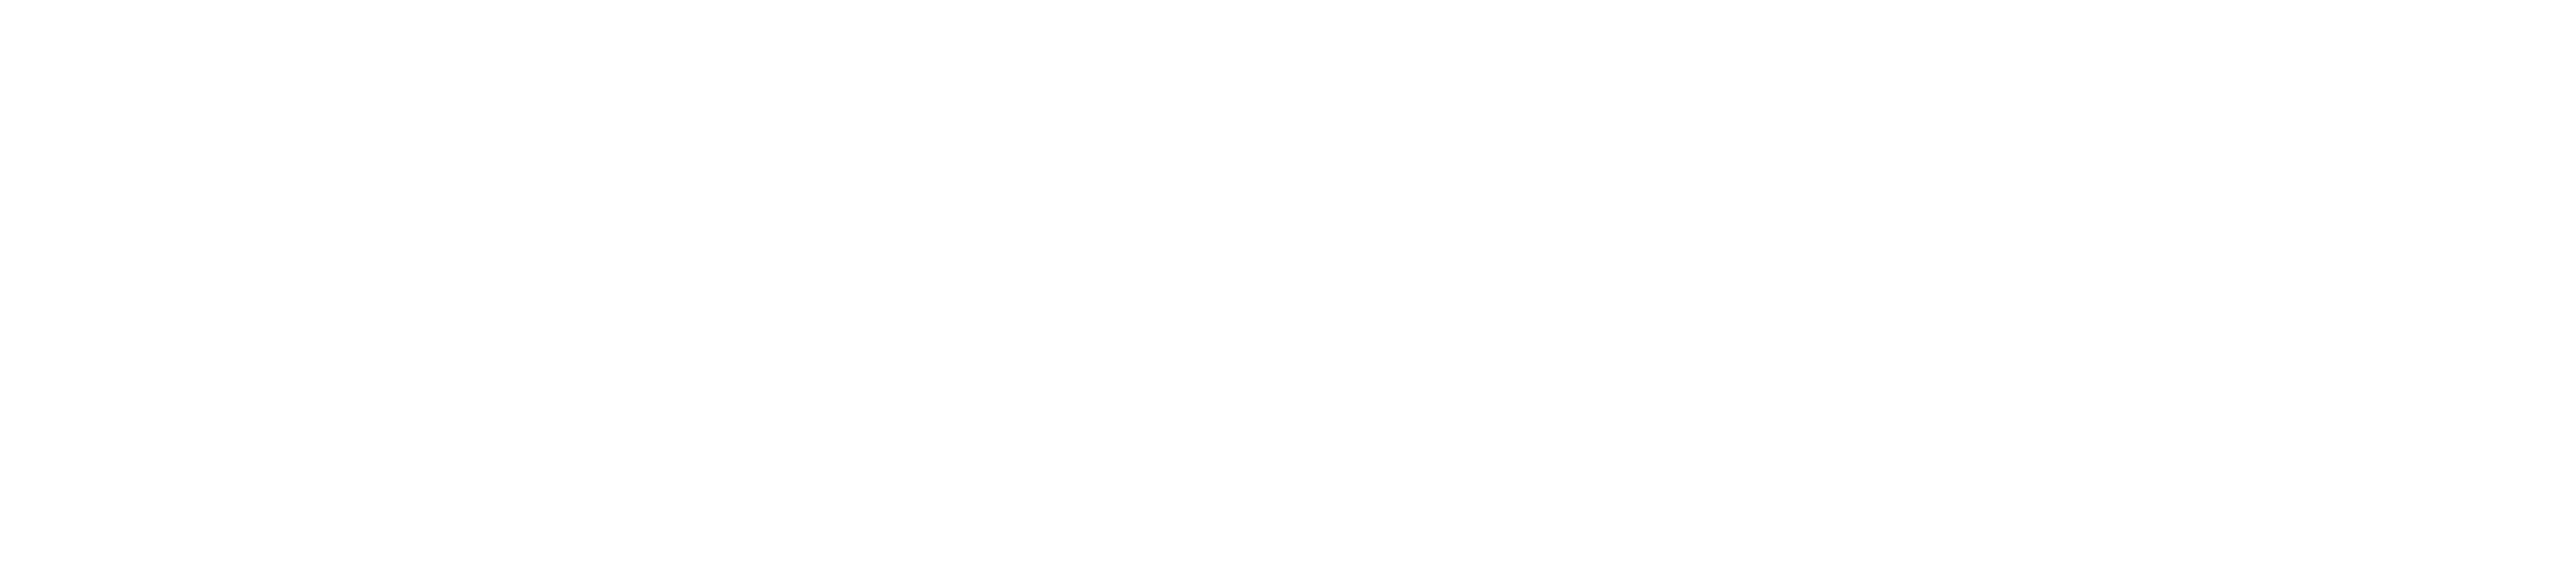 Kucker Marino Winiarsky & Bittens